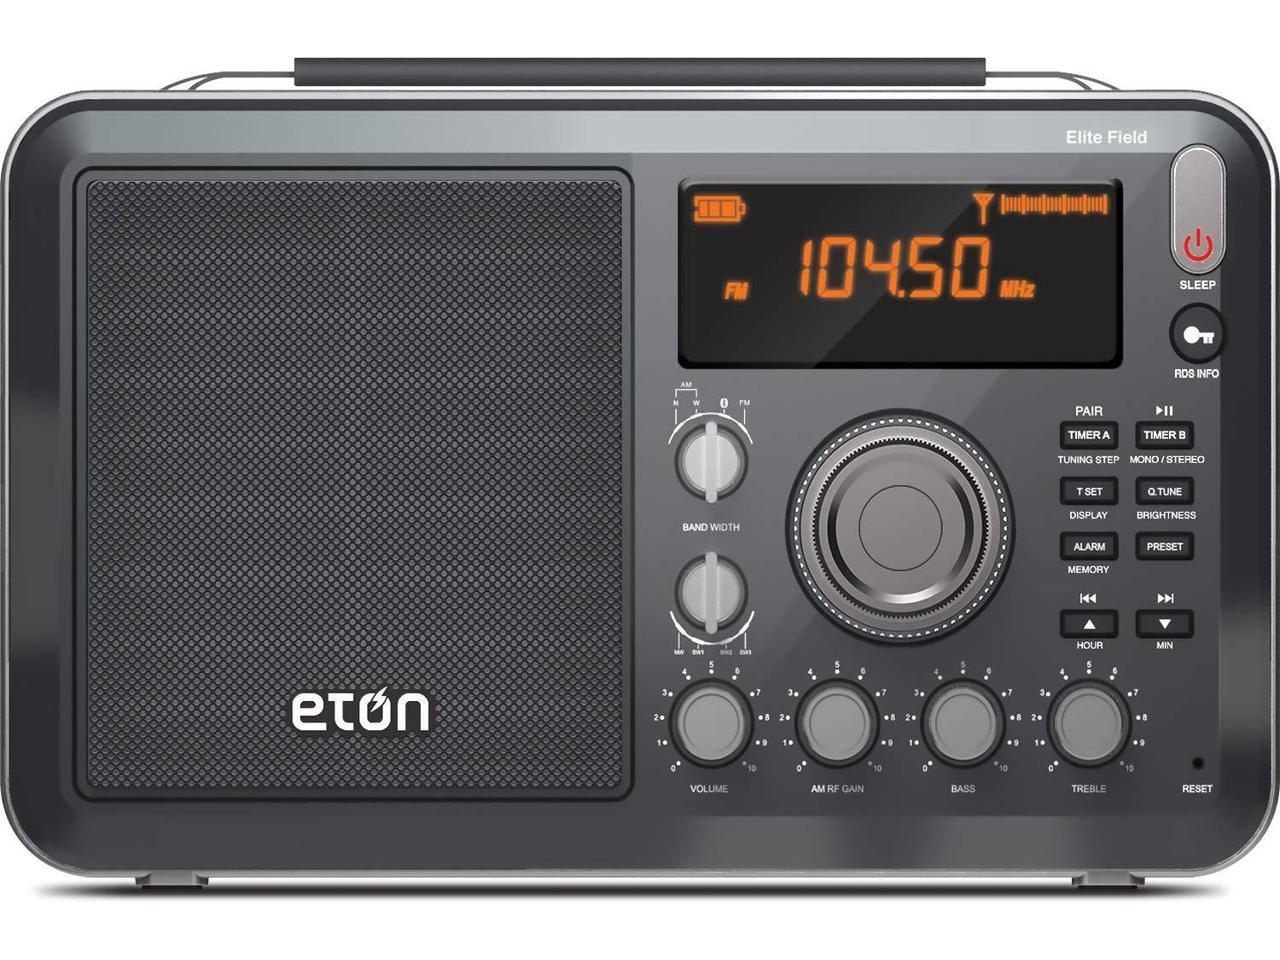 Eton Elite Field Am Fm Shortwave Desktop Radio With Bluetooth